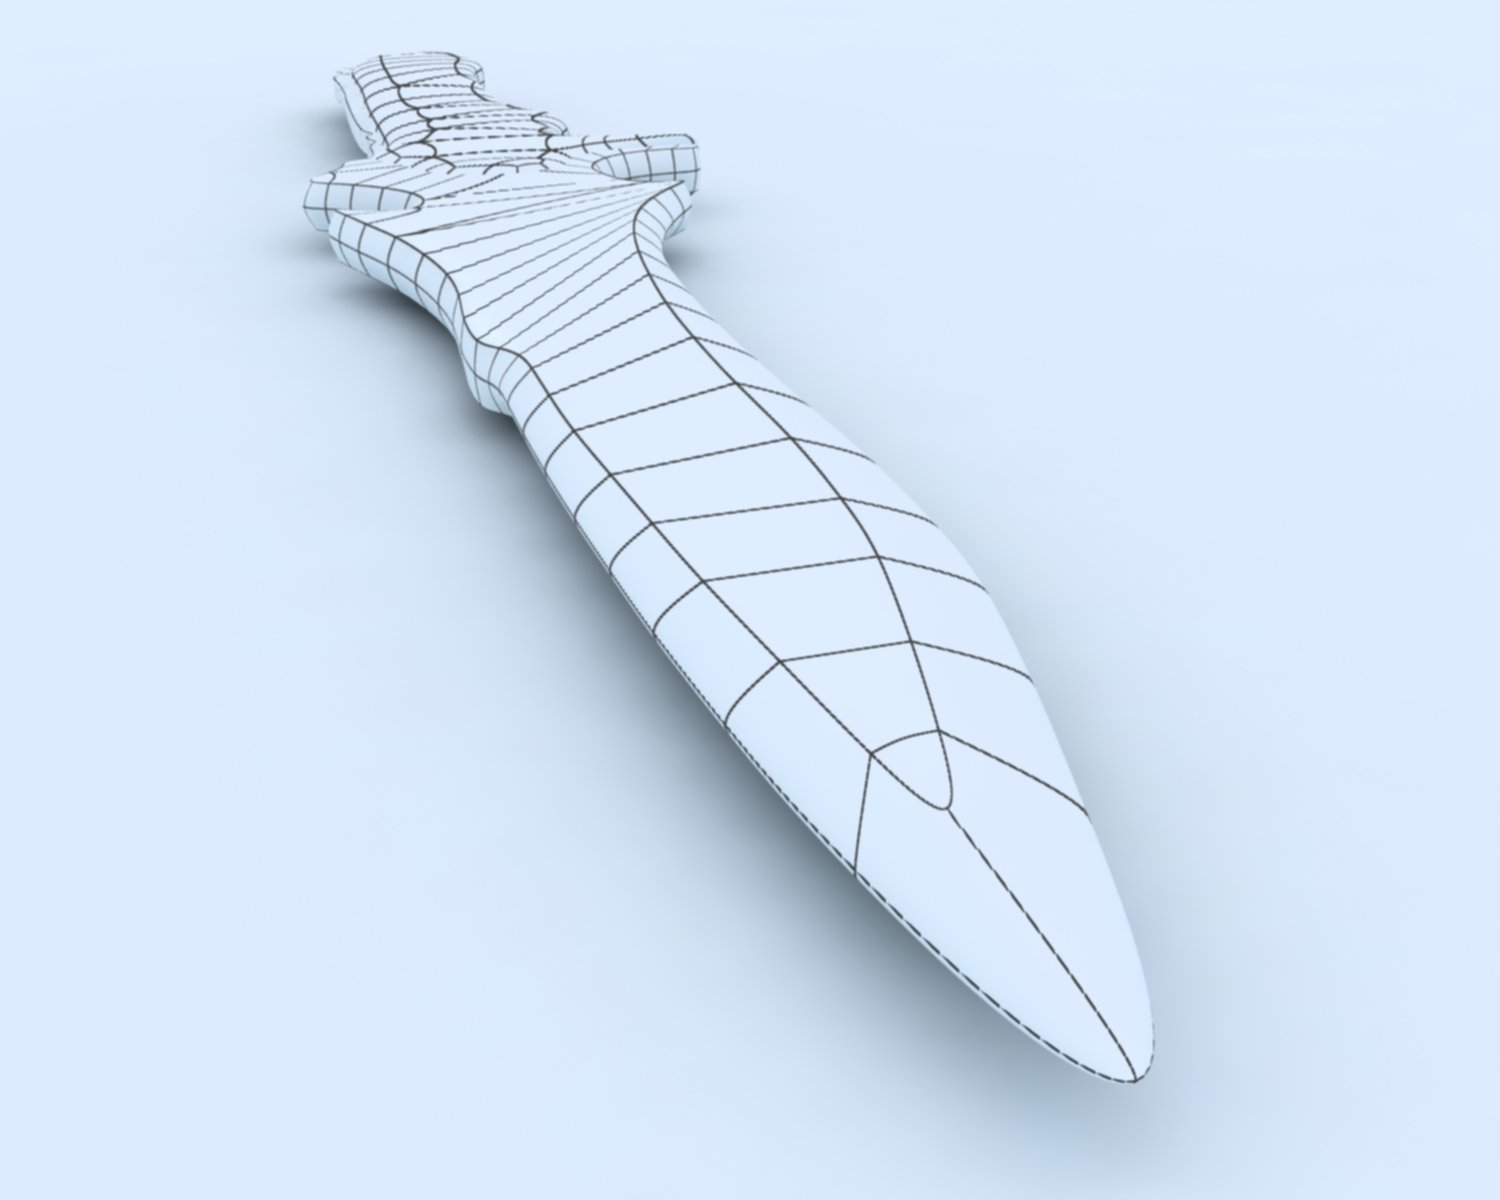 krausers knife 3D Model in Melee 3DExport